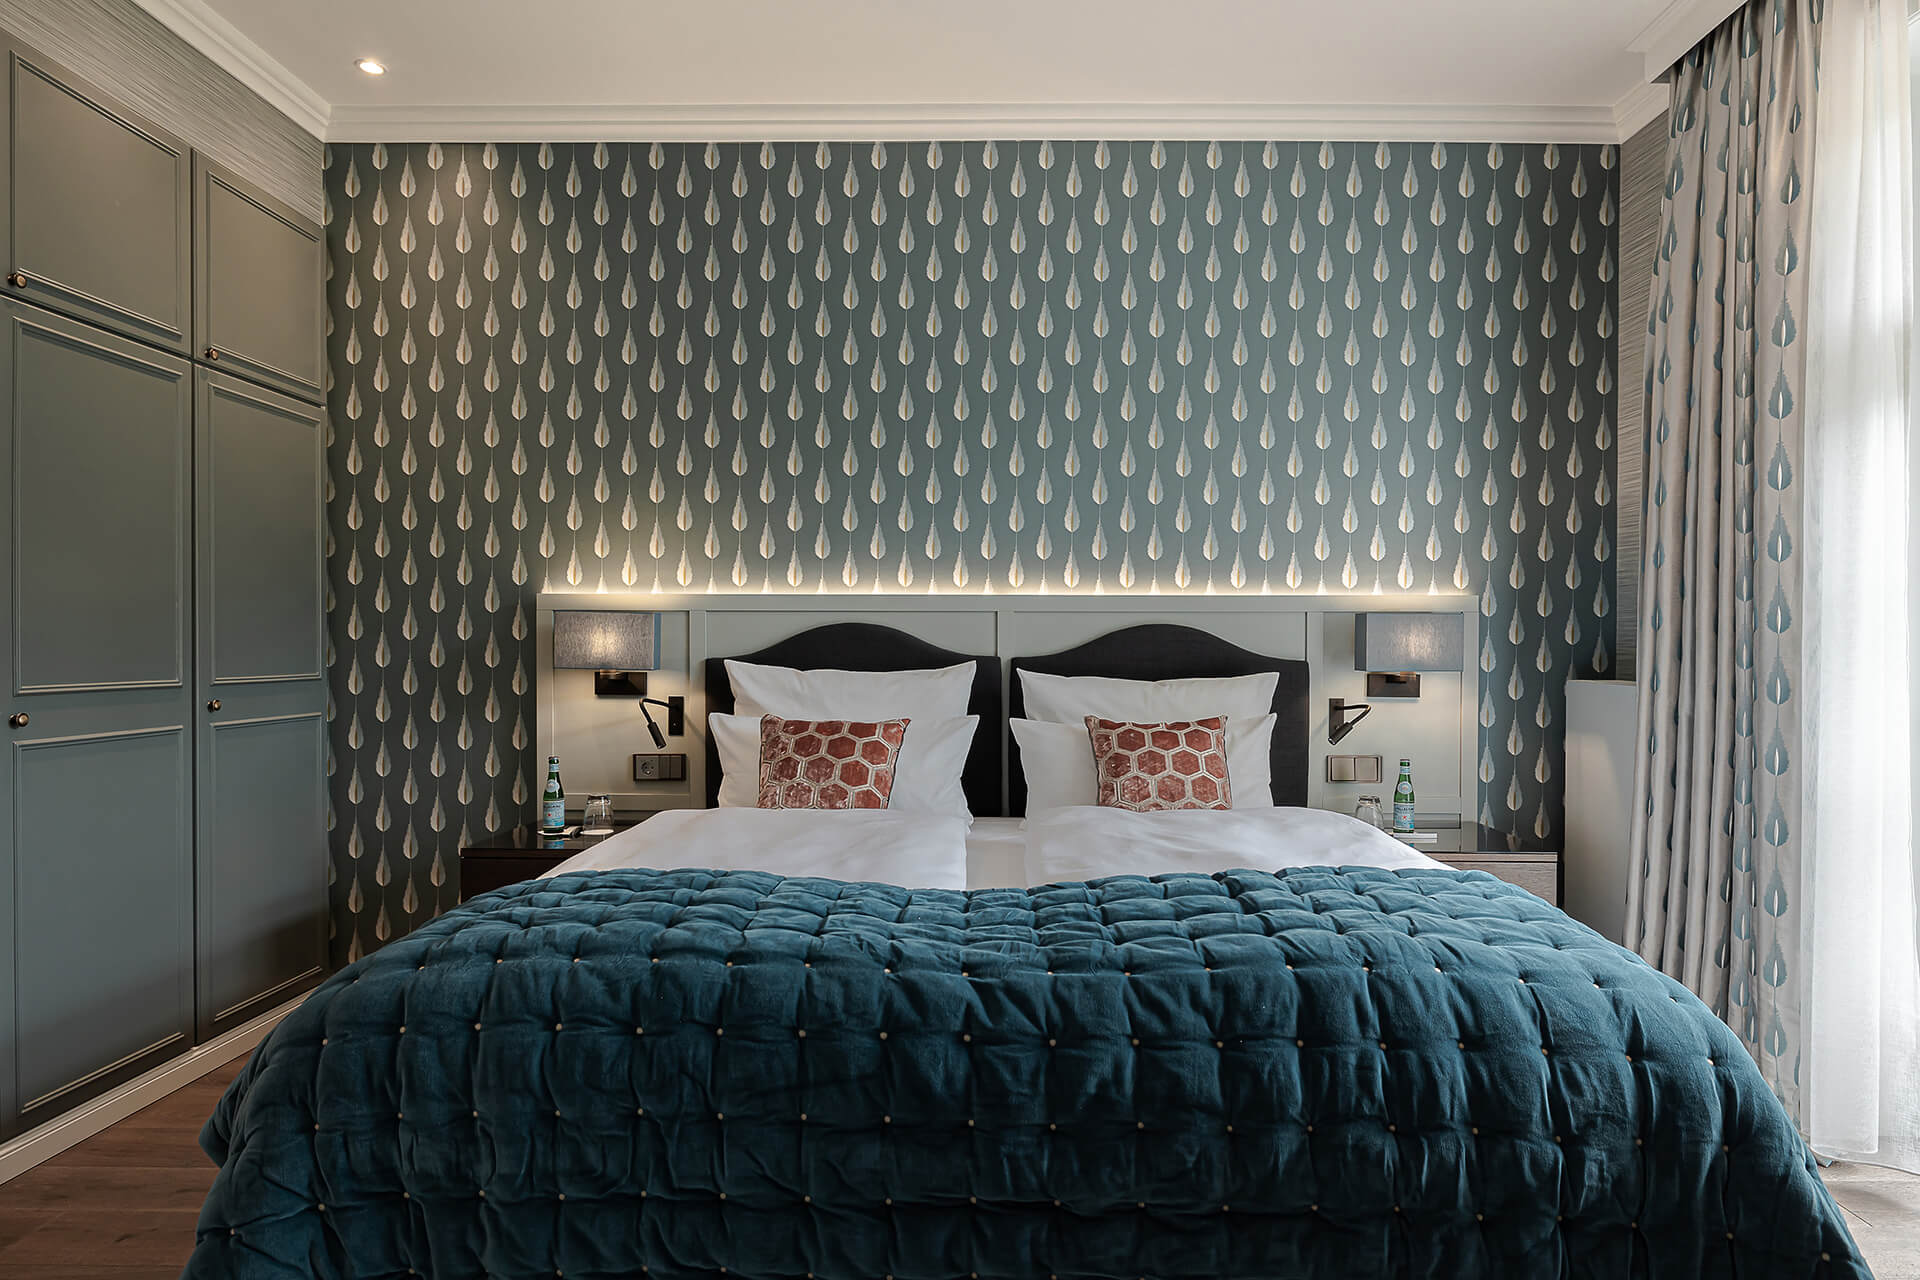 Ein Bett mit einer blauen Decke und einer weißen Lampe an der Wand. Suite Unsere Suiten sind ein wa